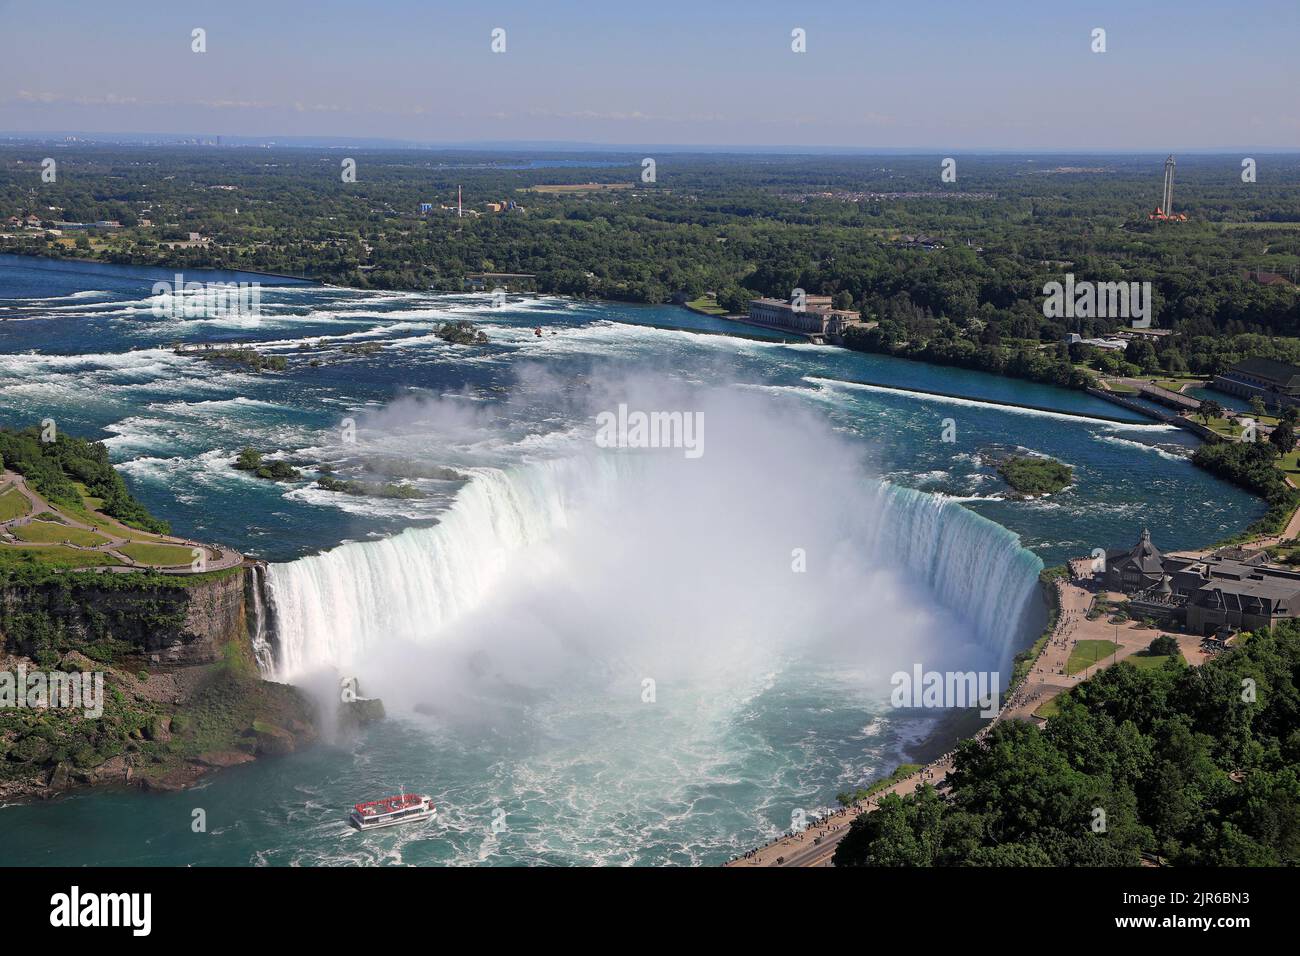 Vista aerea delle cascate di Horseshoe, tra cui Hornblower Boat in barca a vela sul fiume Niagara, sul confine naturale del Canada e degli Stati Uniti Foto Stock